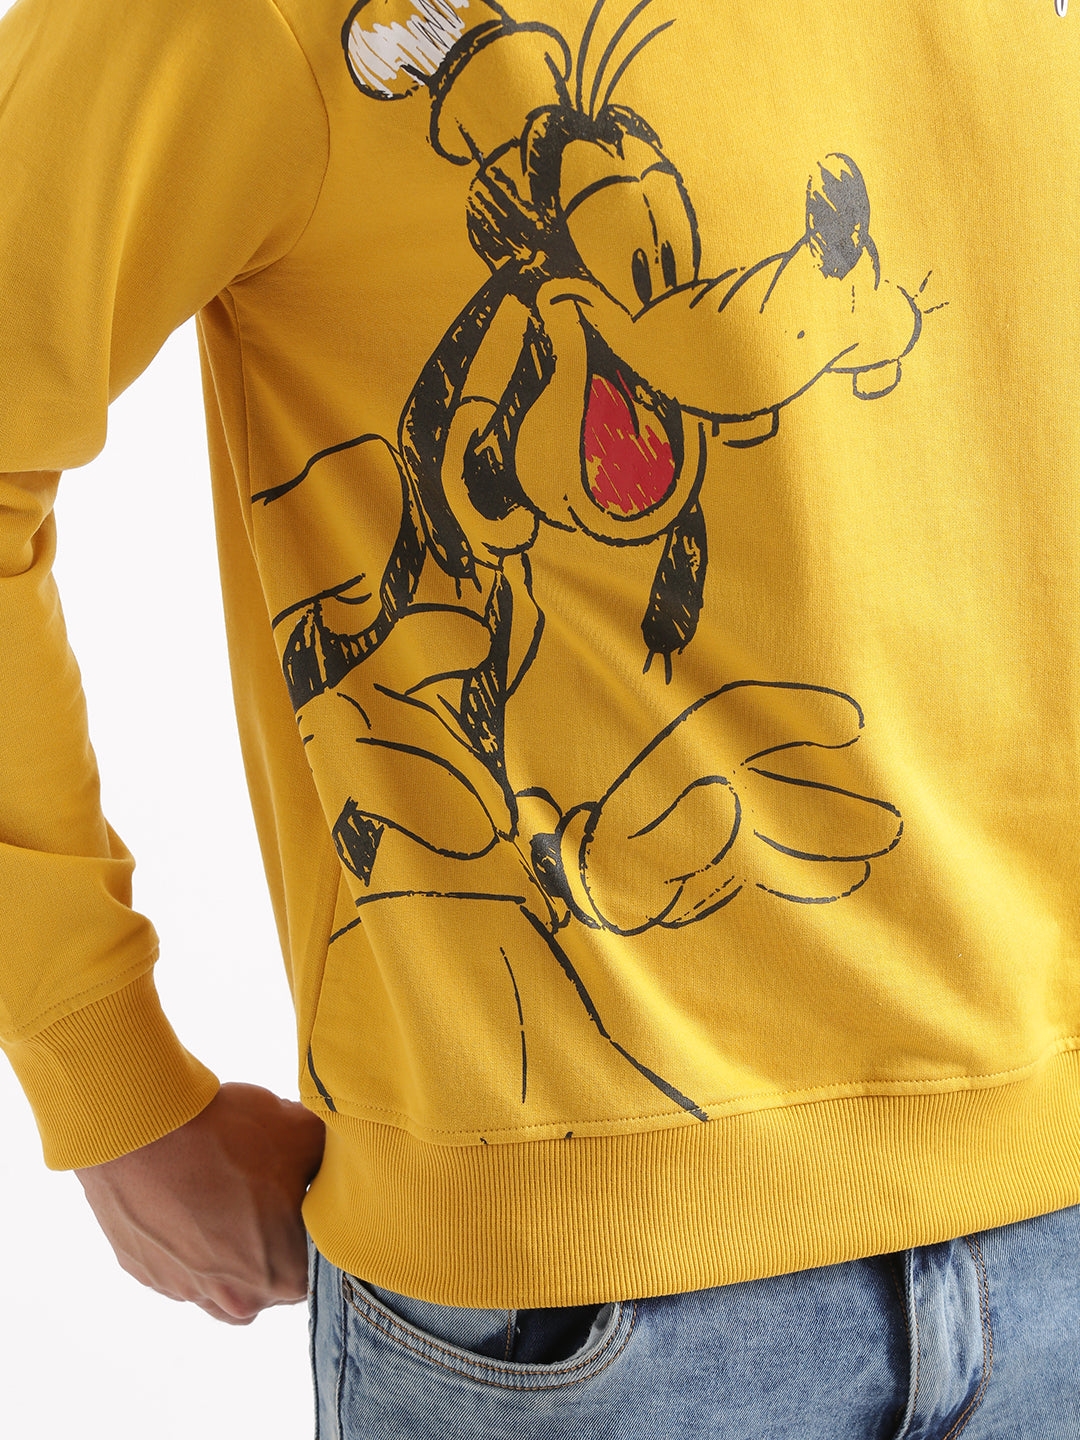 Goofy's Sunny Yellow Sweatshirt